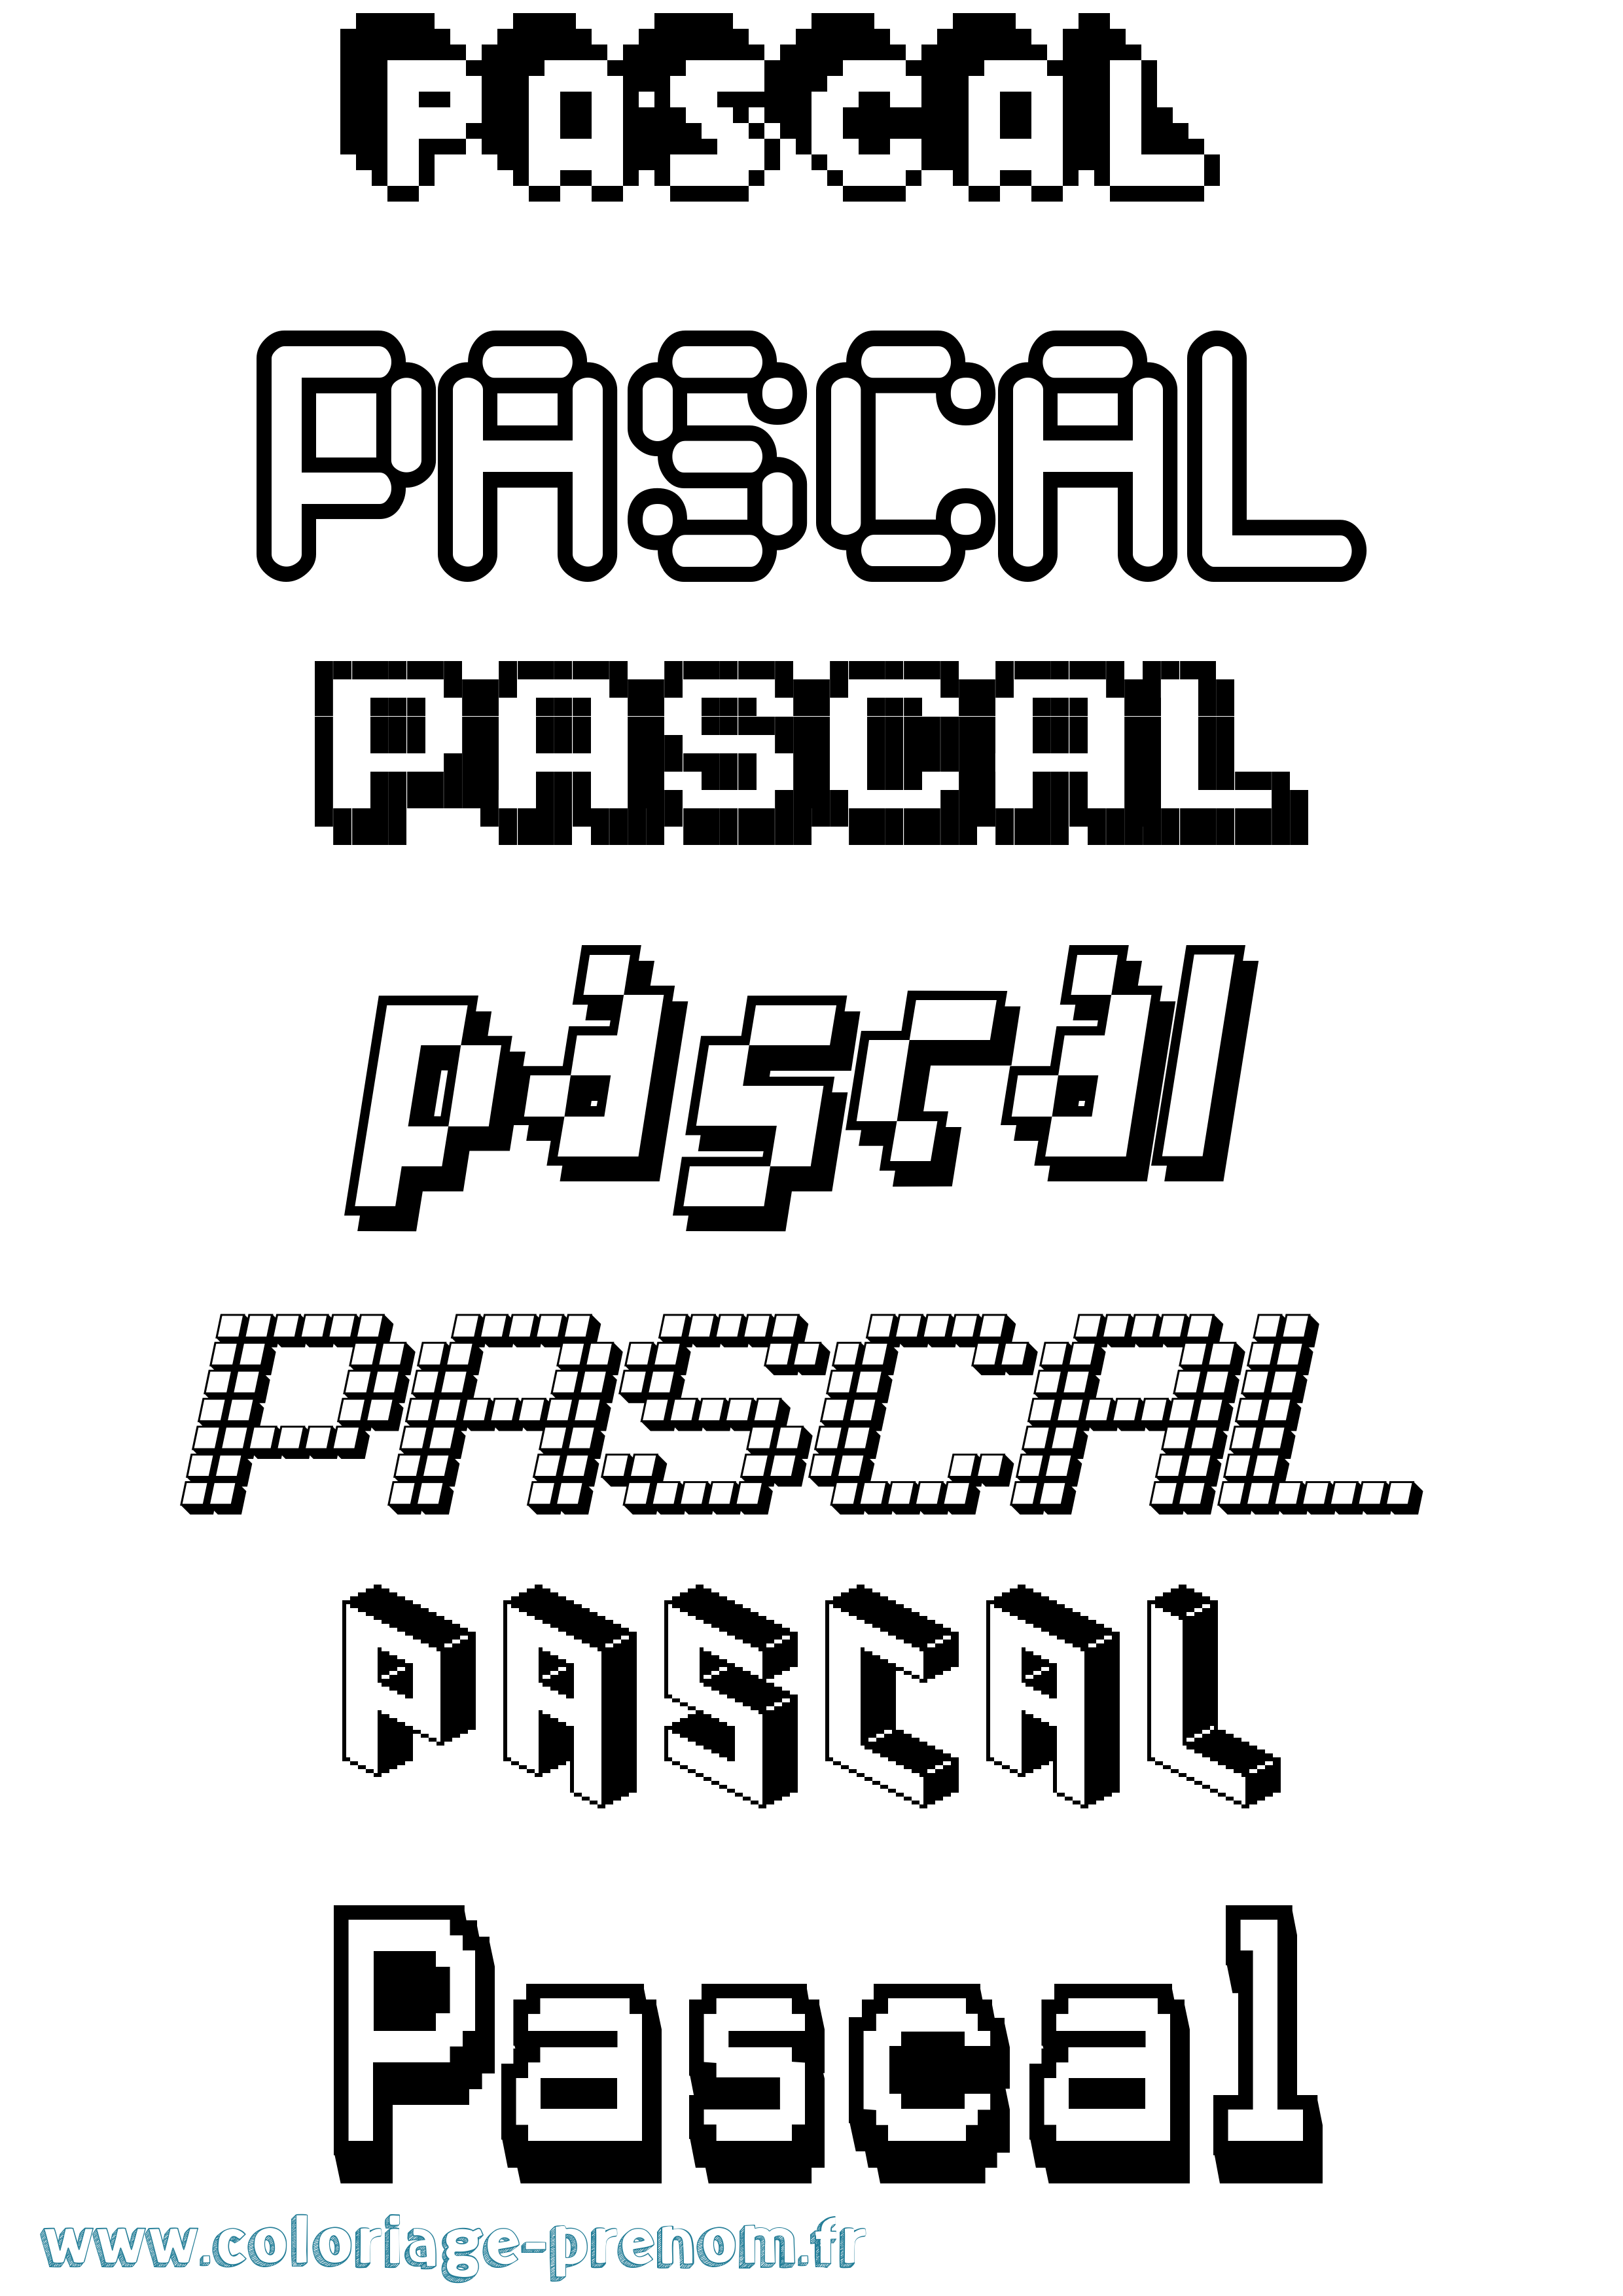 Coloriage prénom Pascal Pixel